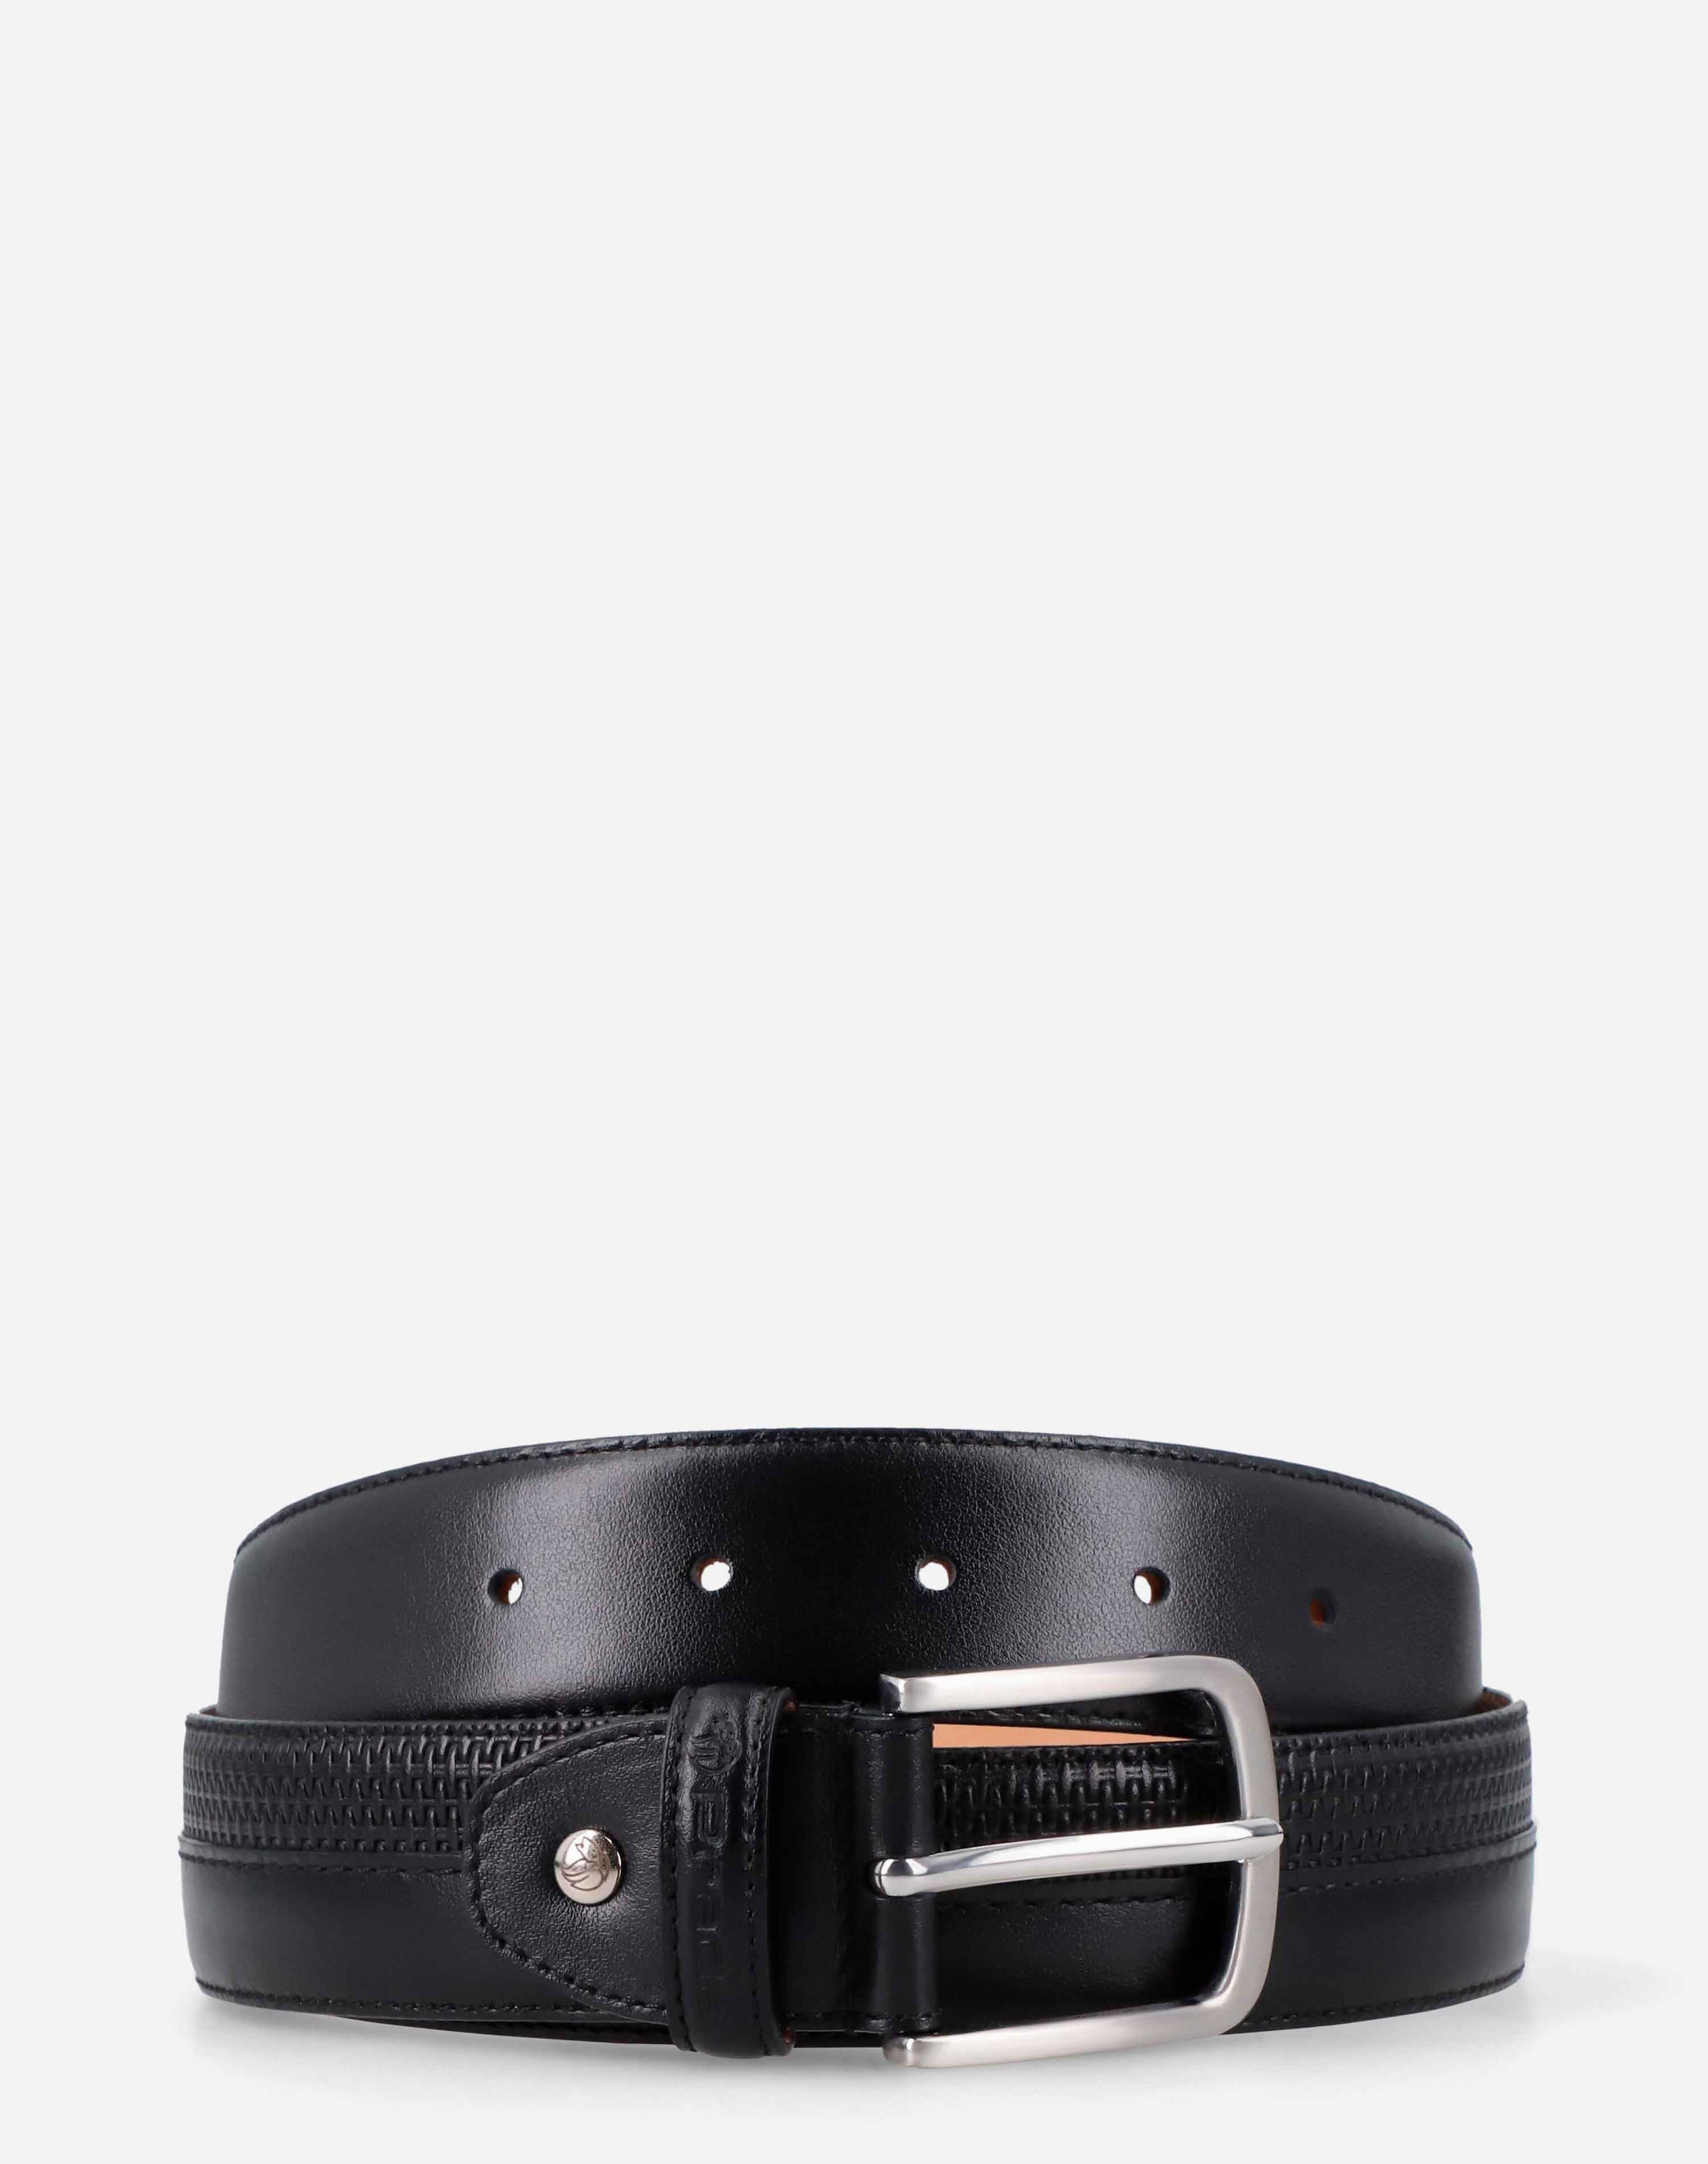 Cinturón en piel grabada color negro